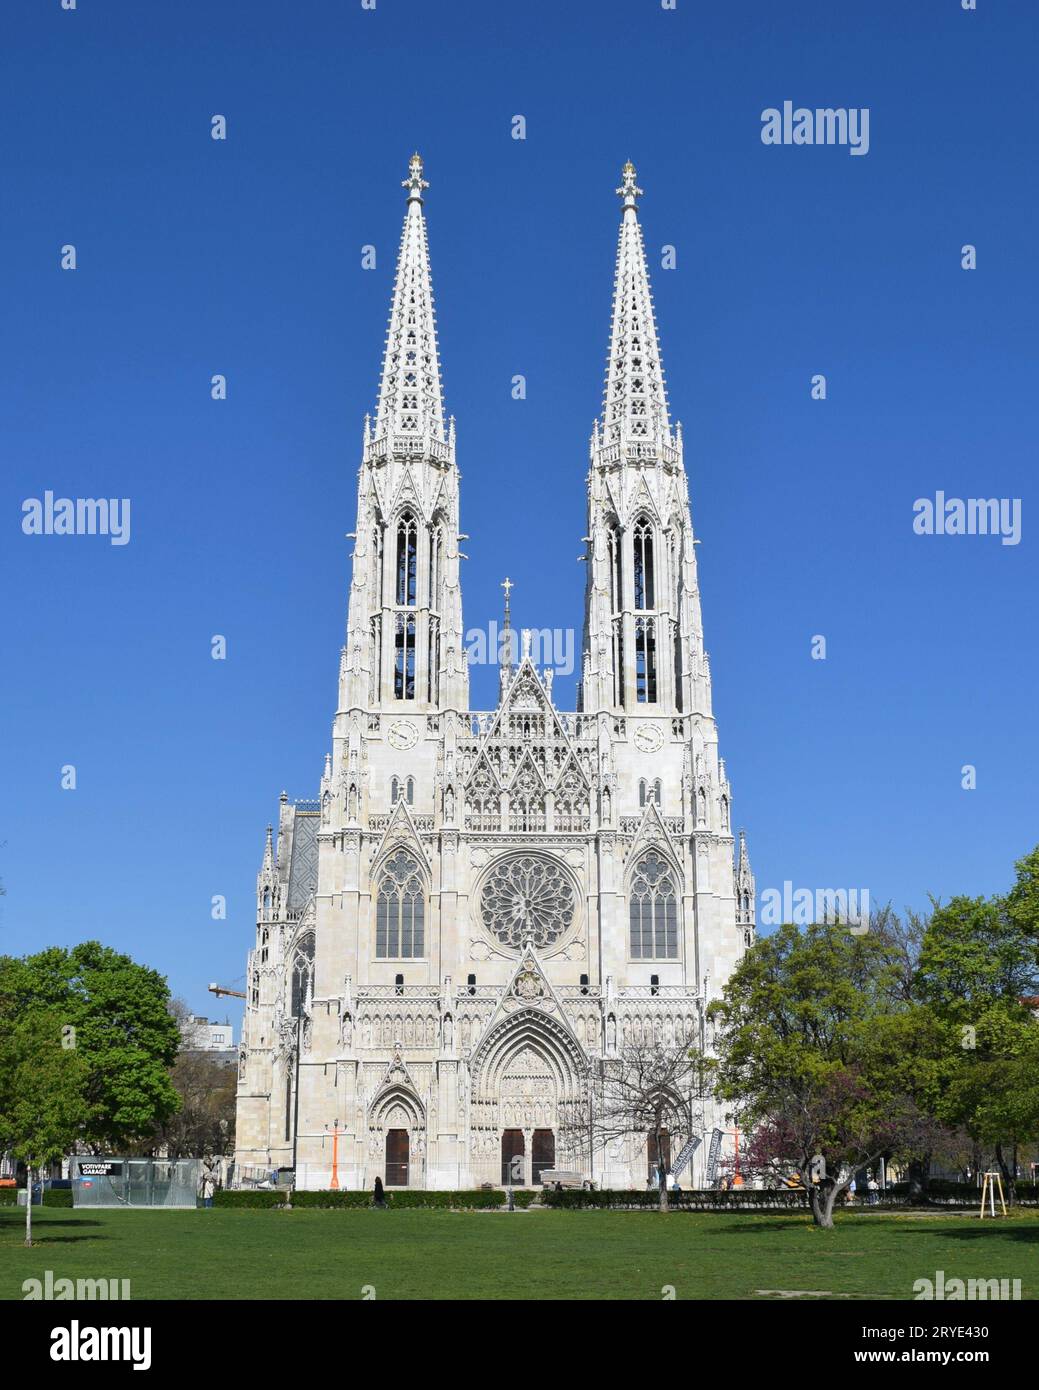 Votivkirche Church, Vienna, Austria Stock Photo